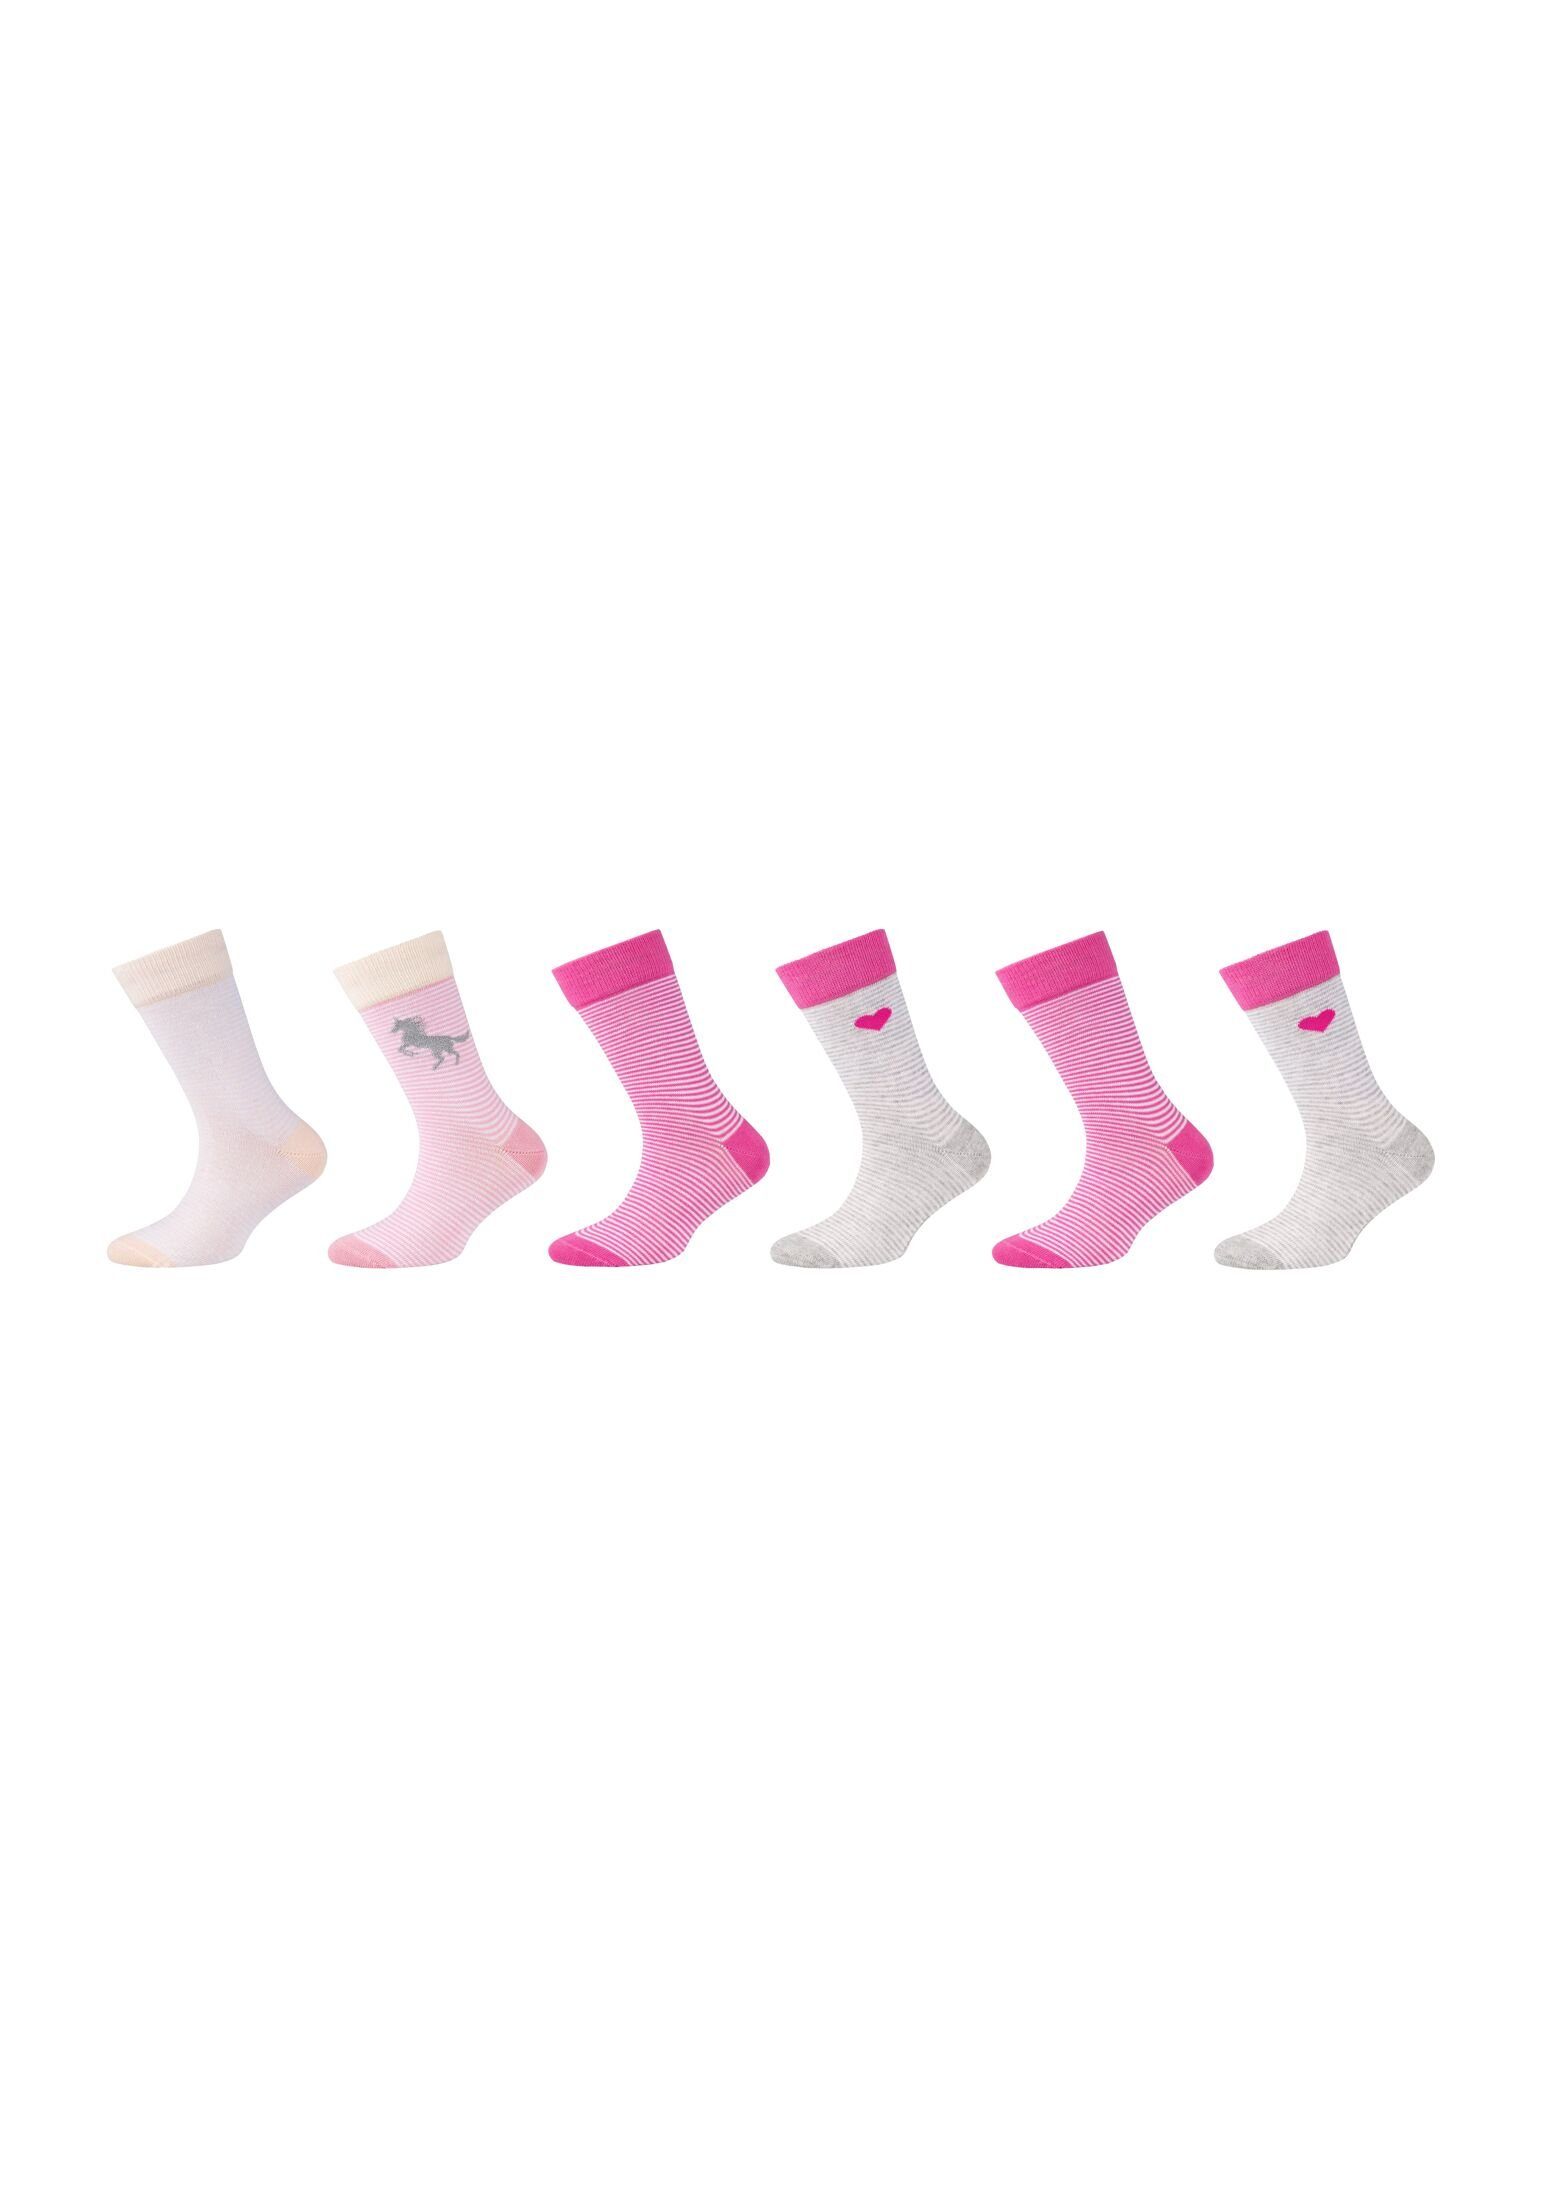 Camano Socken Socken 6er Pack